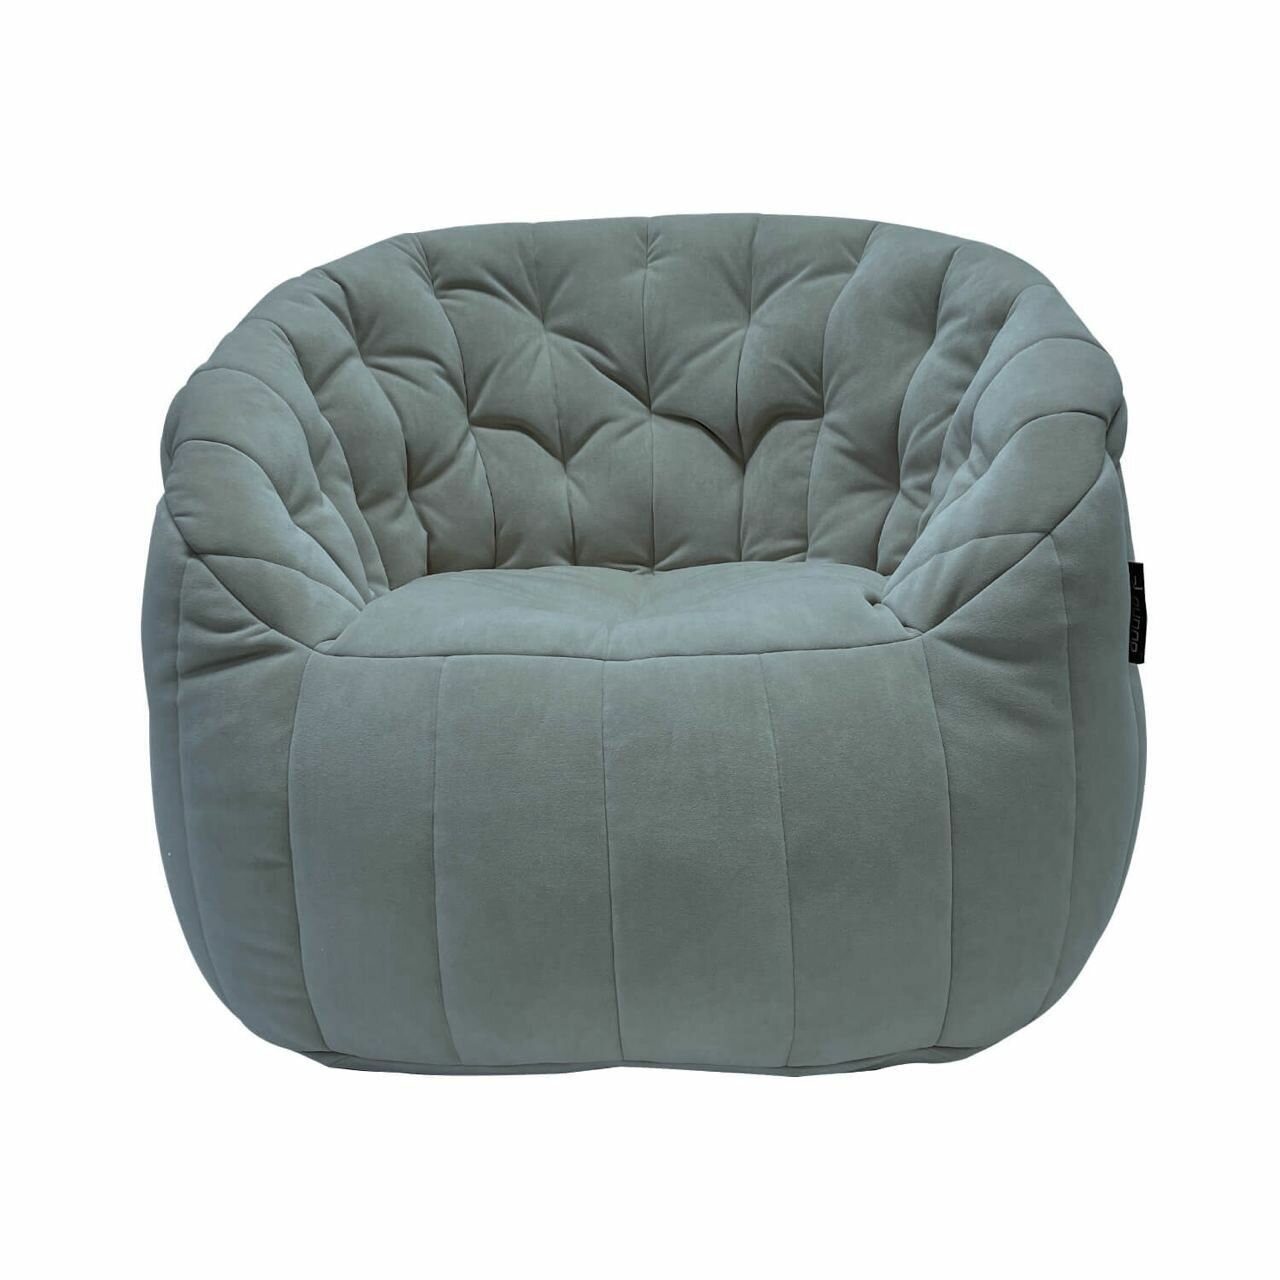 Дизайнерское кресло-мешок для отдыха aLounge - Butterfly Sofa - Keystone Grey (велюр, серый) - современная мебель в гостиную, спальню, детскую, офис, на балкон